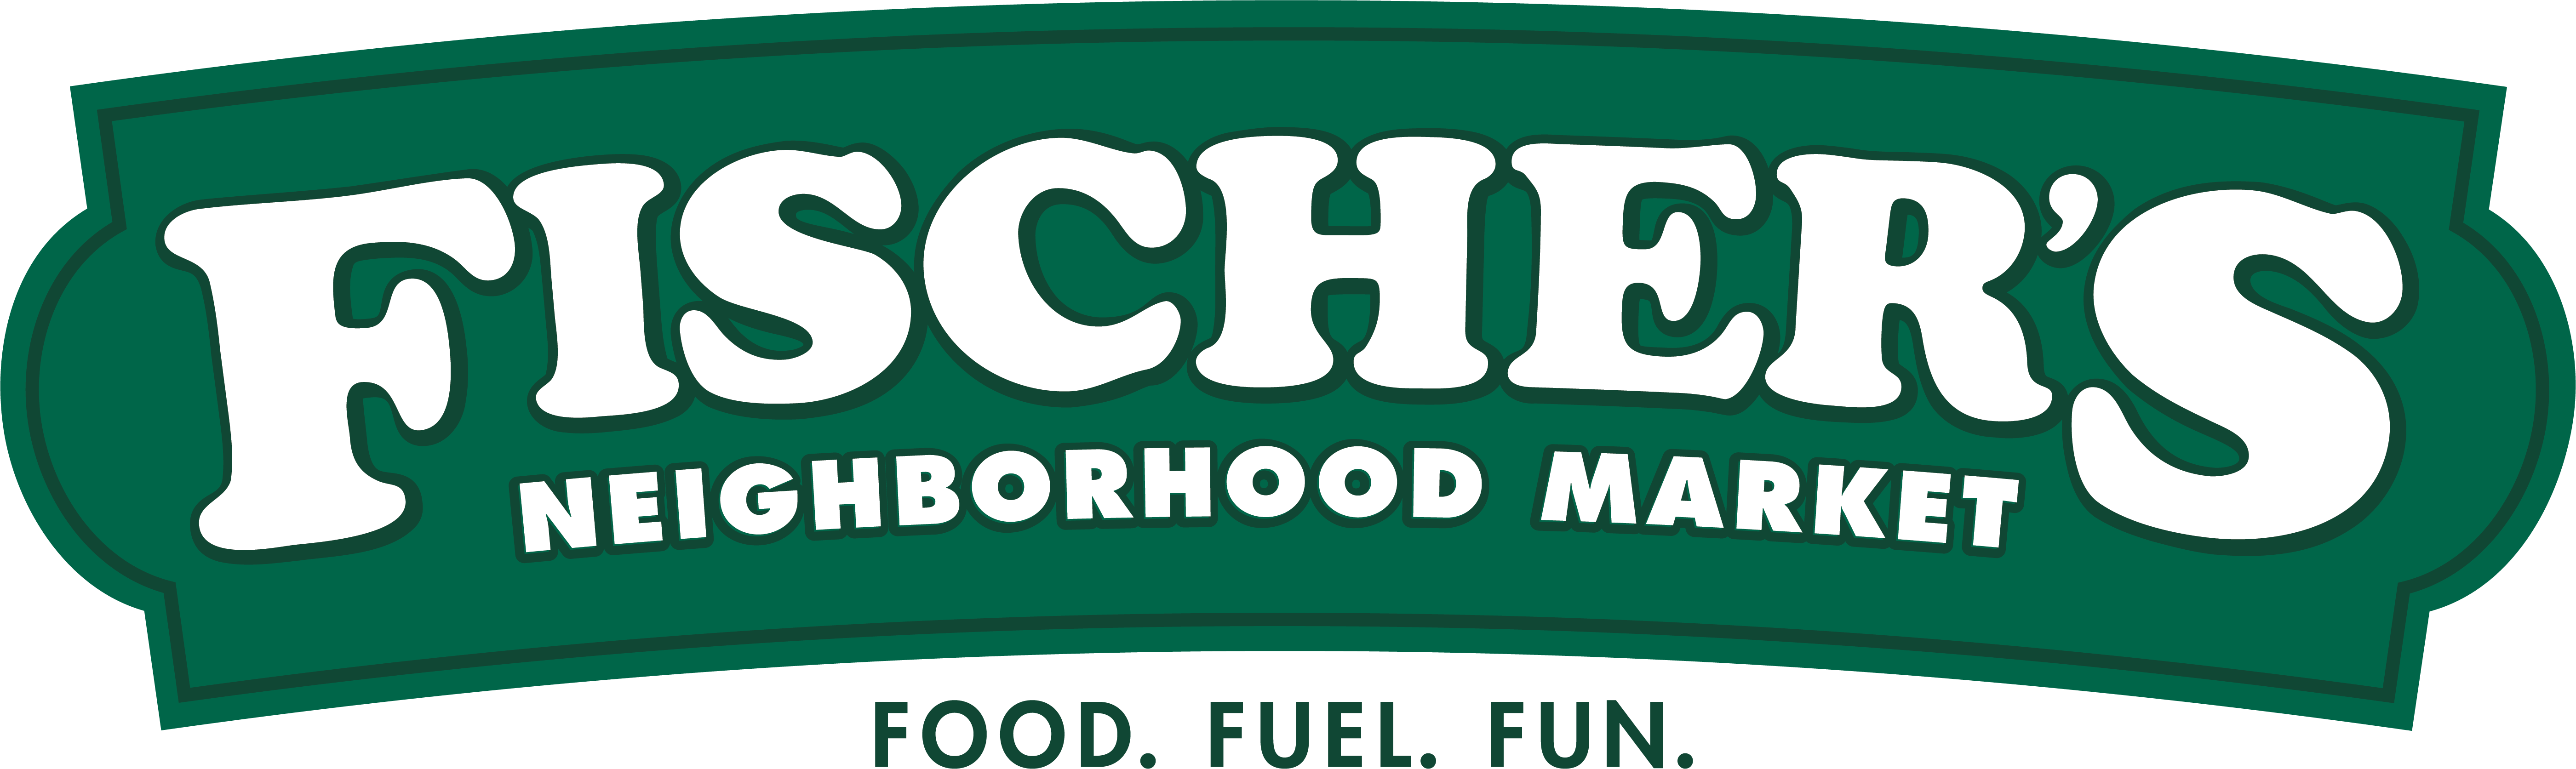 Fischer's Neighborhood Market & Pit Stop Food Mart